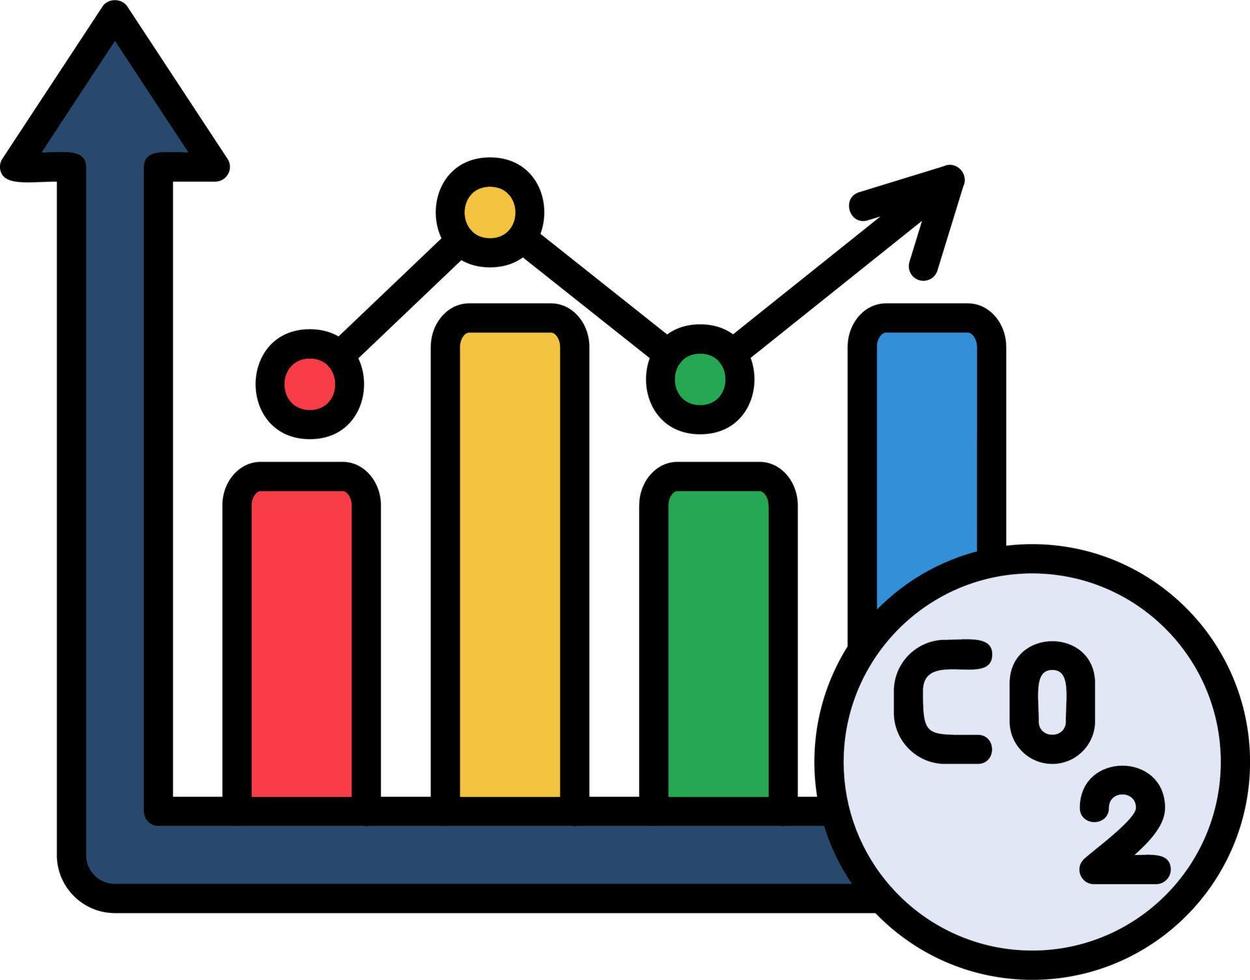 CO2 Vector Icon